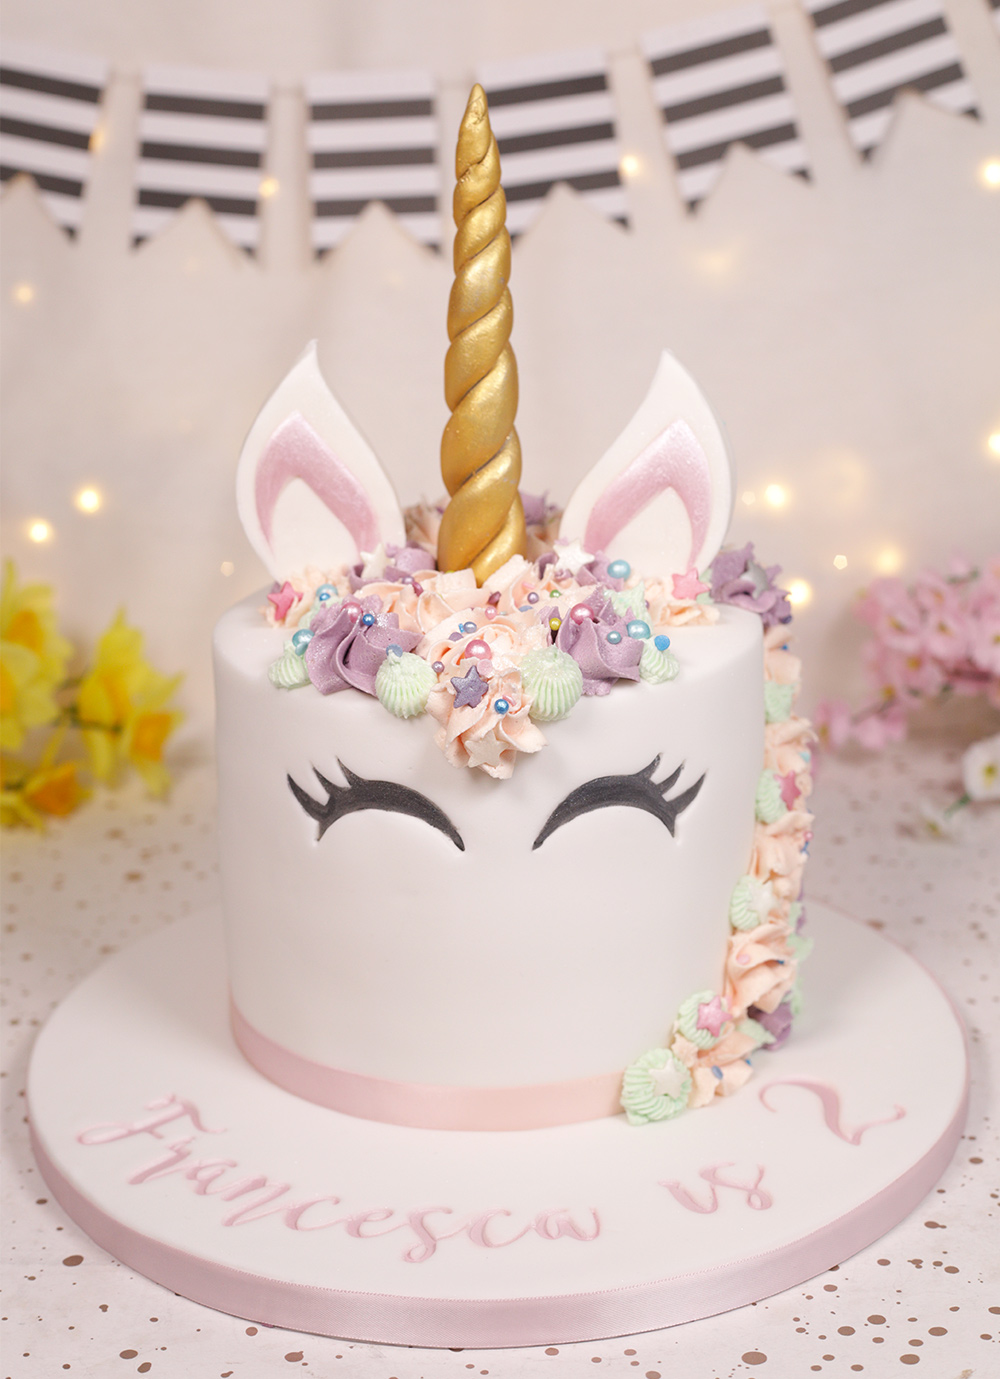 Pretty unicorn cake - Cakey Goodness